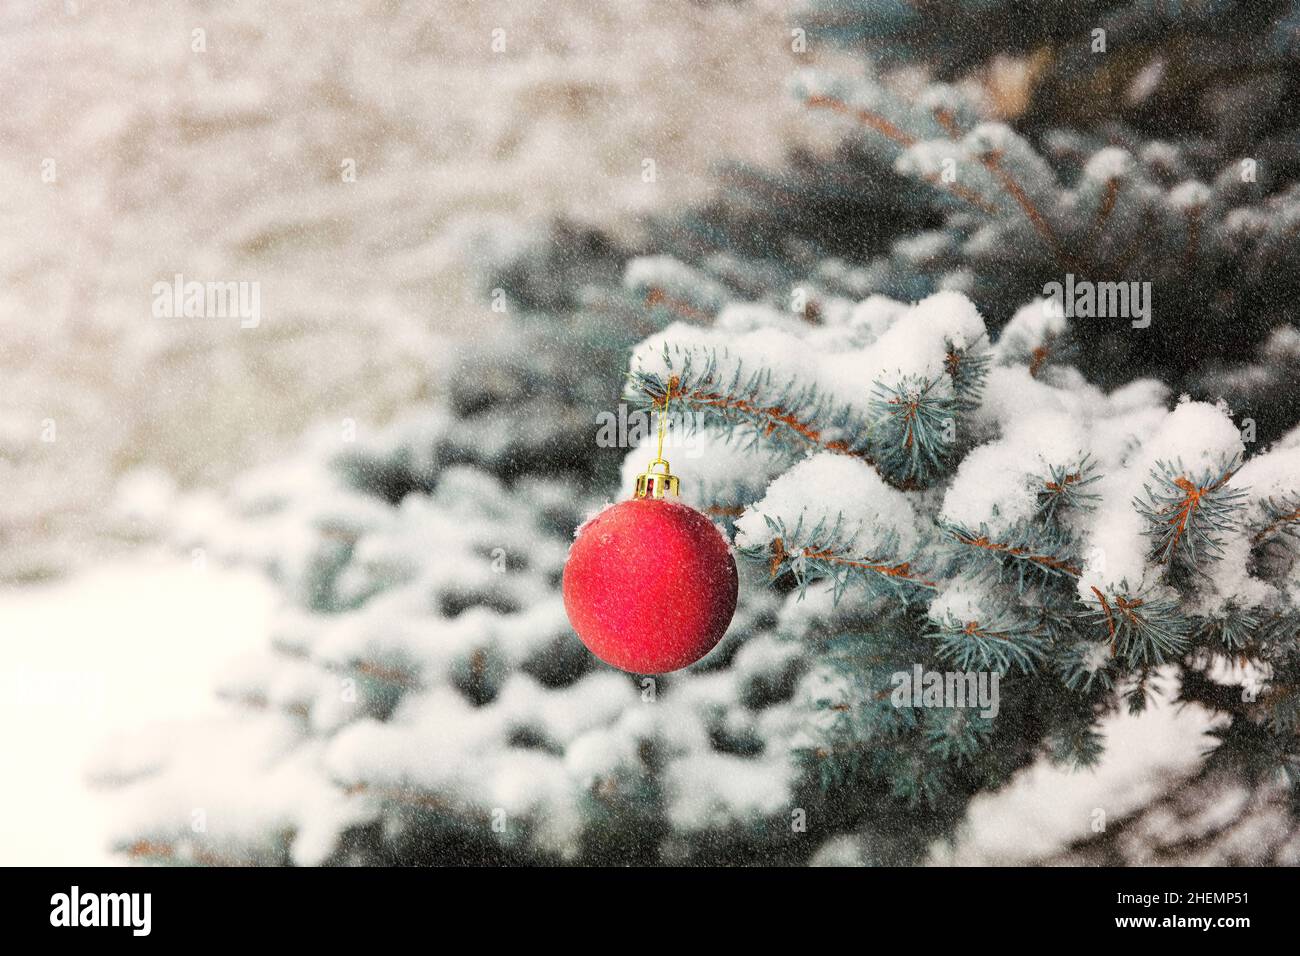 Sapin de Noël extérieur recouvert de neige avec gros plan d'un ornement rouge et or pour le concept de Noël ou du nouvel an avec un look vintage Banque D'Images